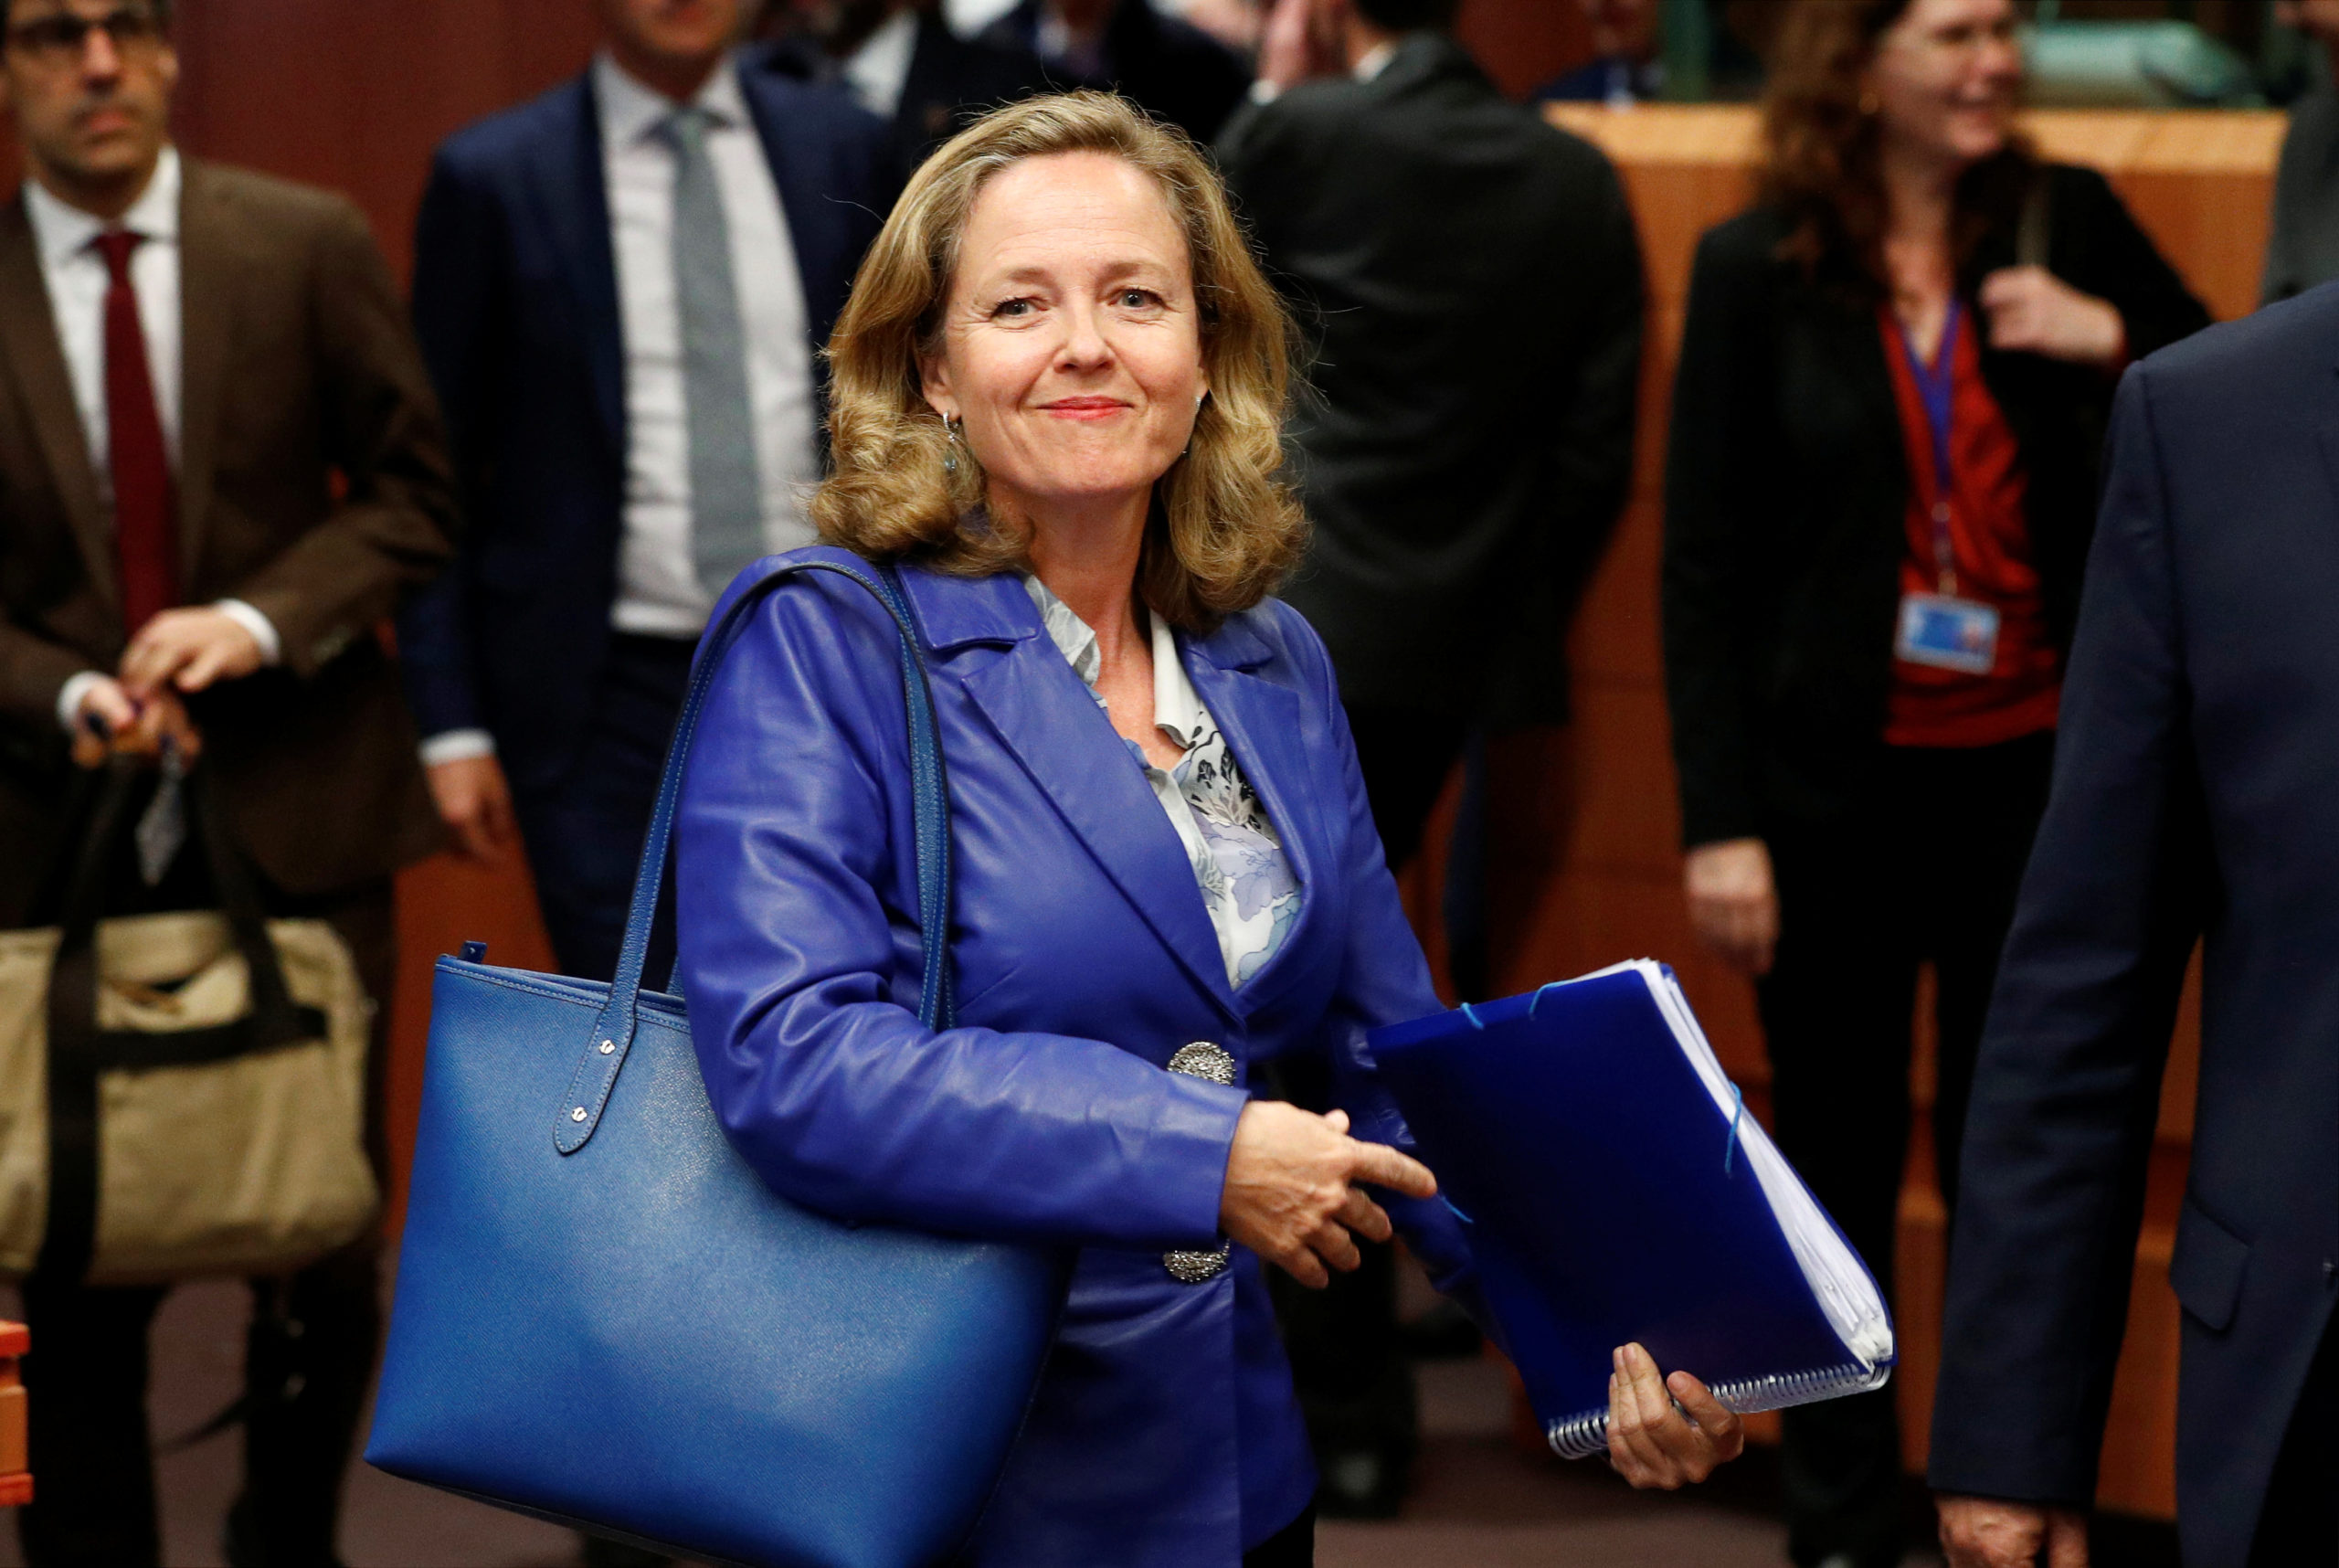 La France soutient la candidature de l'Espagnole Calvino à l'Eurogroupe